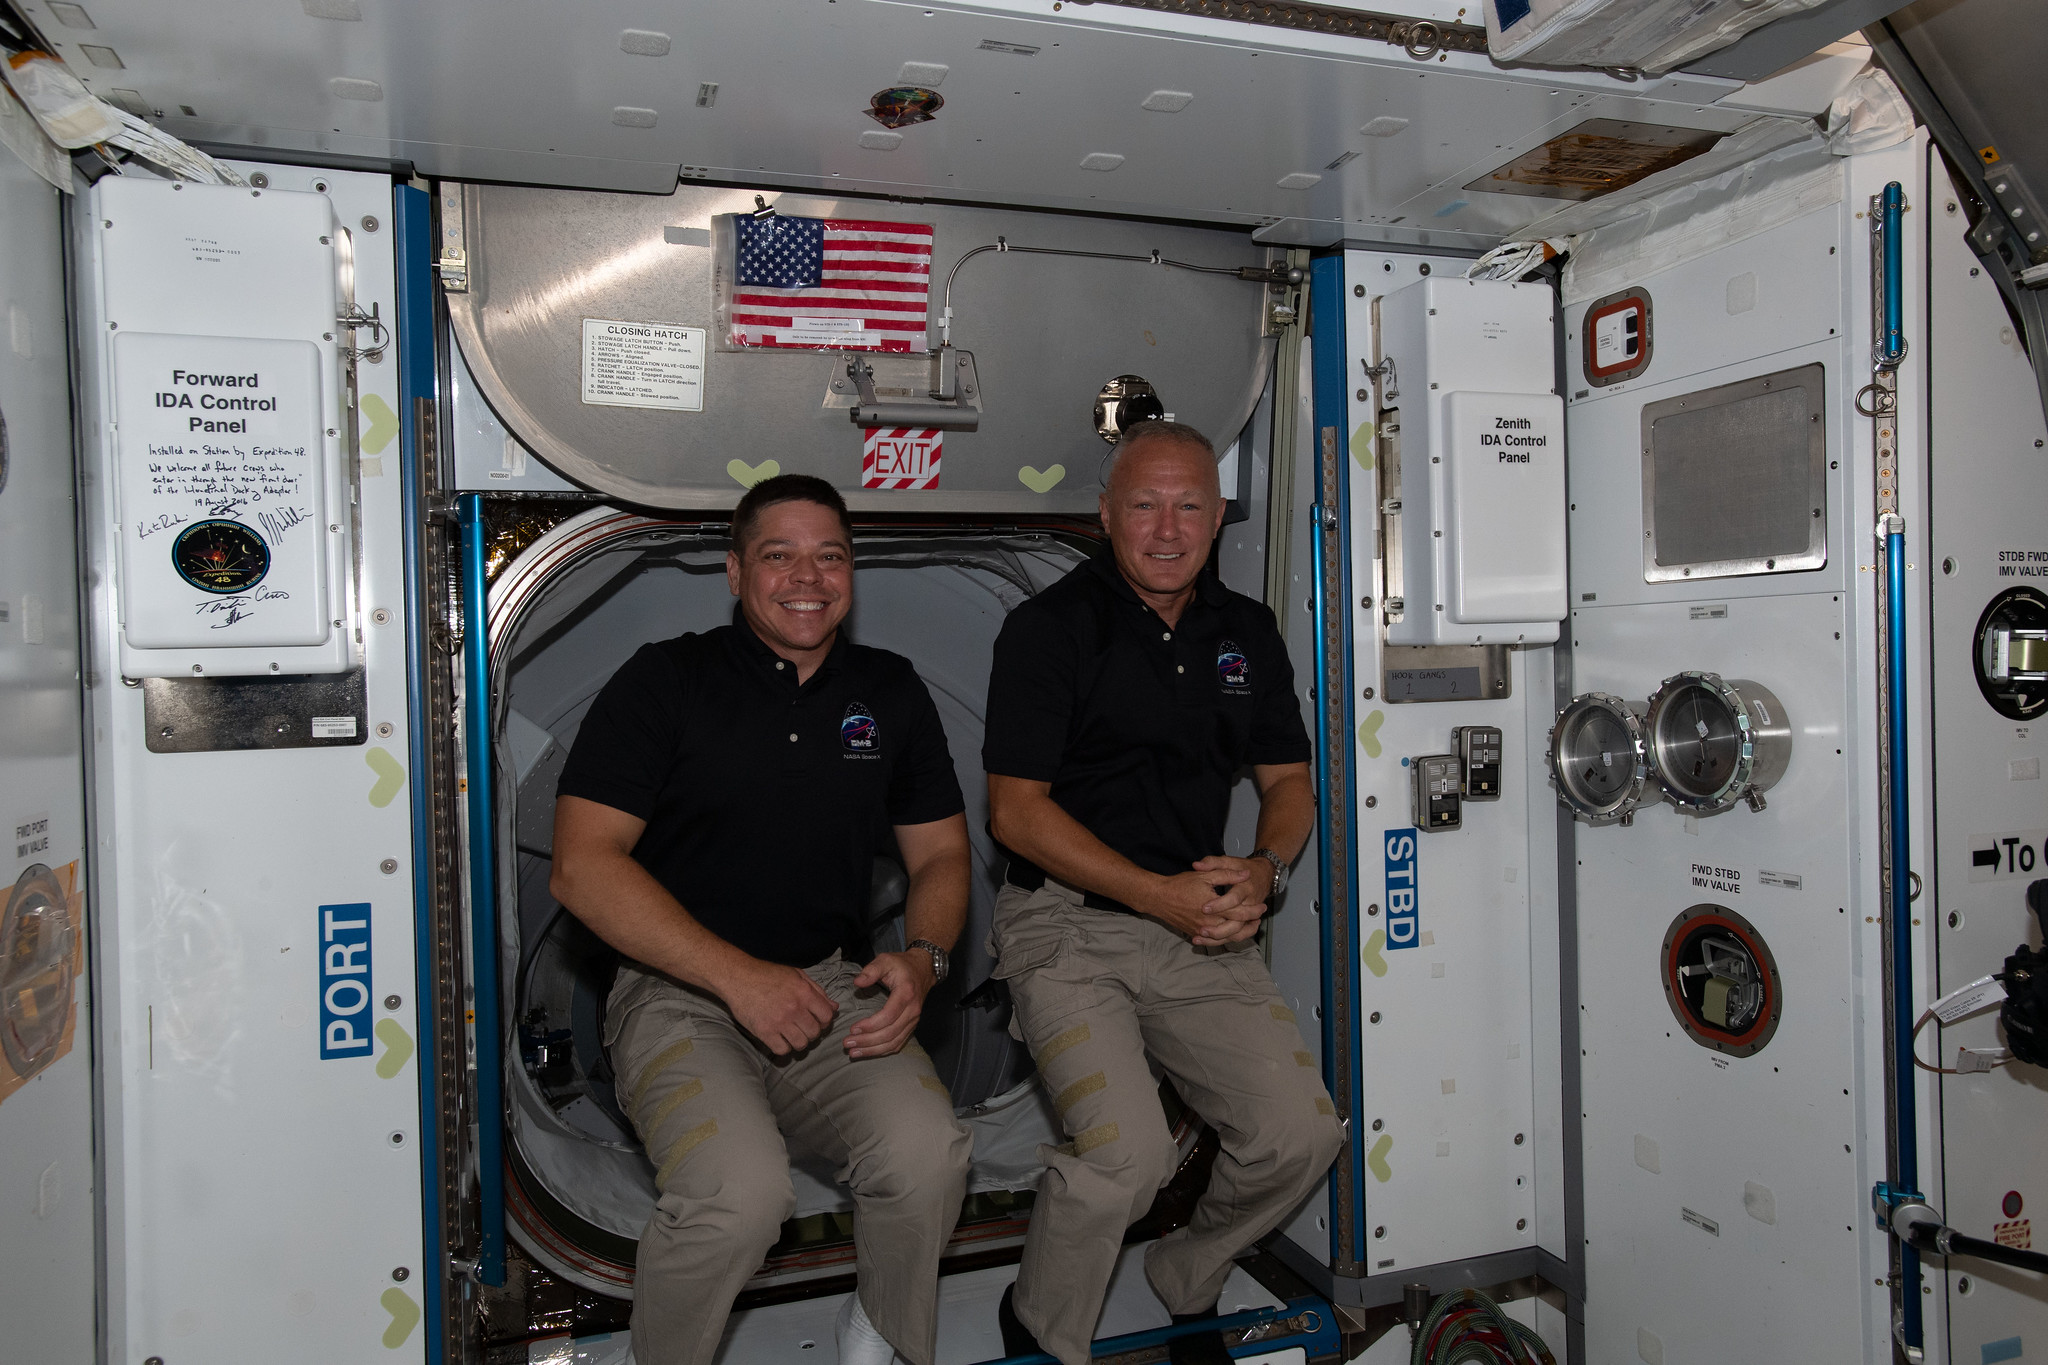  NASA astronauts Bob Behnken and Doug Hurley